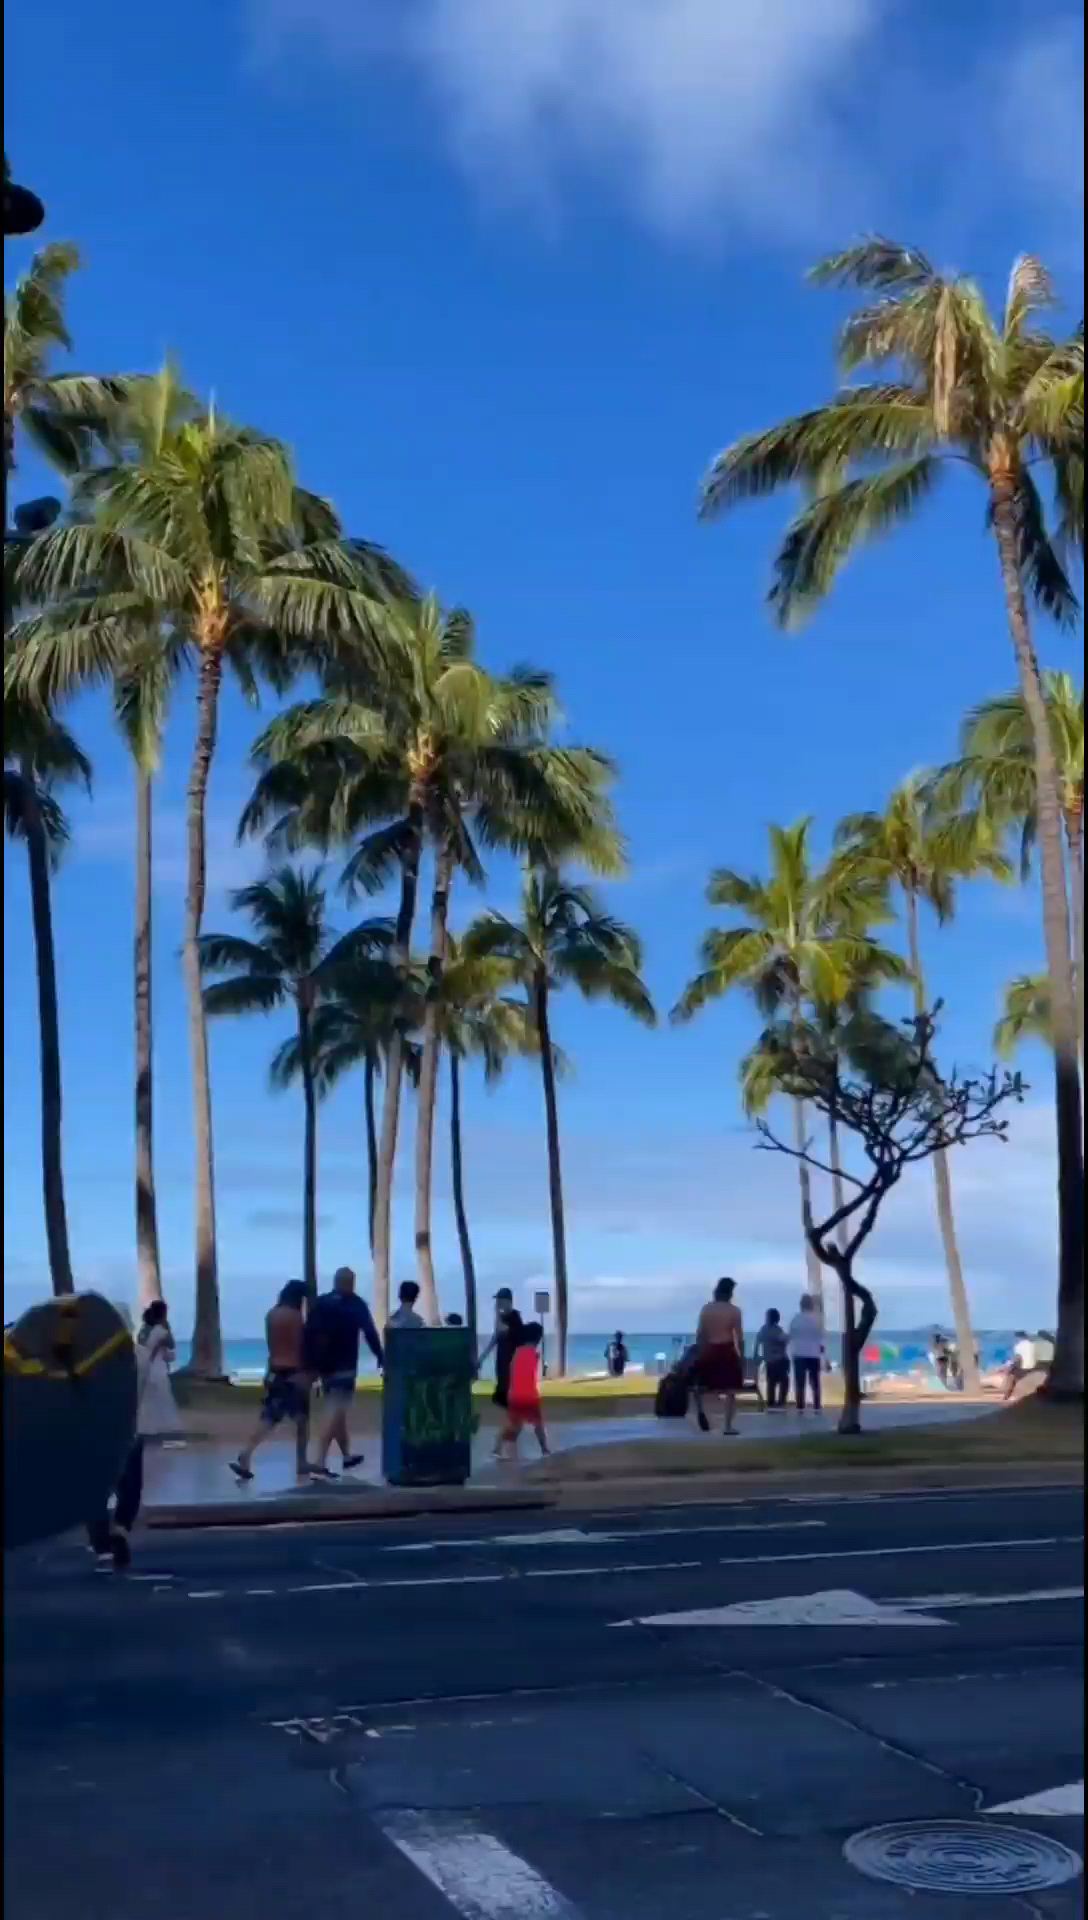 美国夏威夷，距离美国本土最远的一个洲，夏威夷以旅游度假而闻名全世界，是“太平洋的一颗明珠”。提到夏威